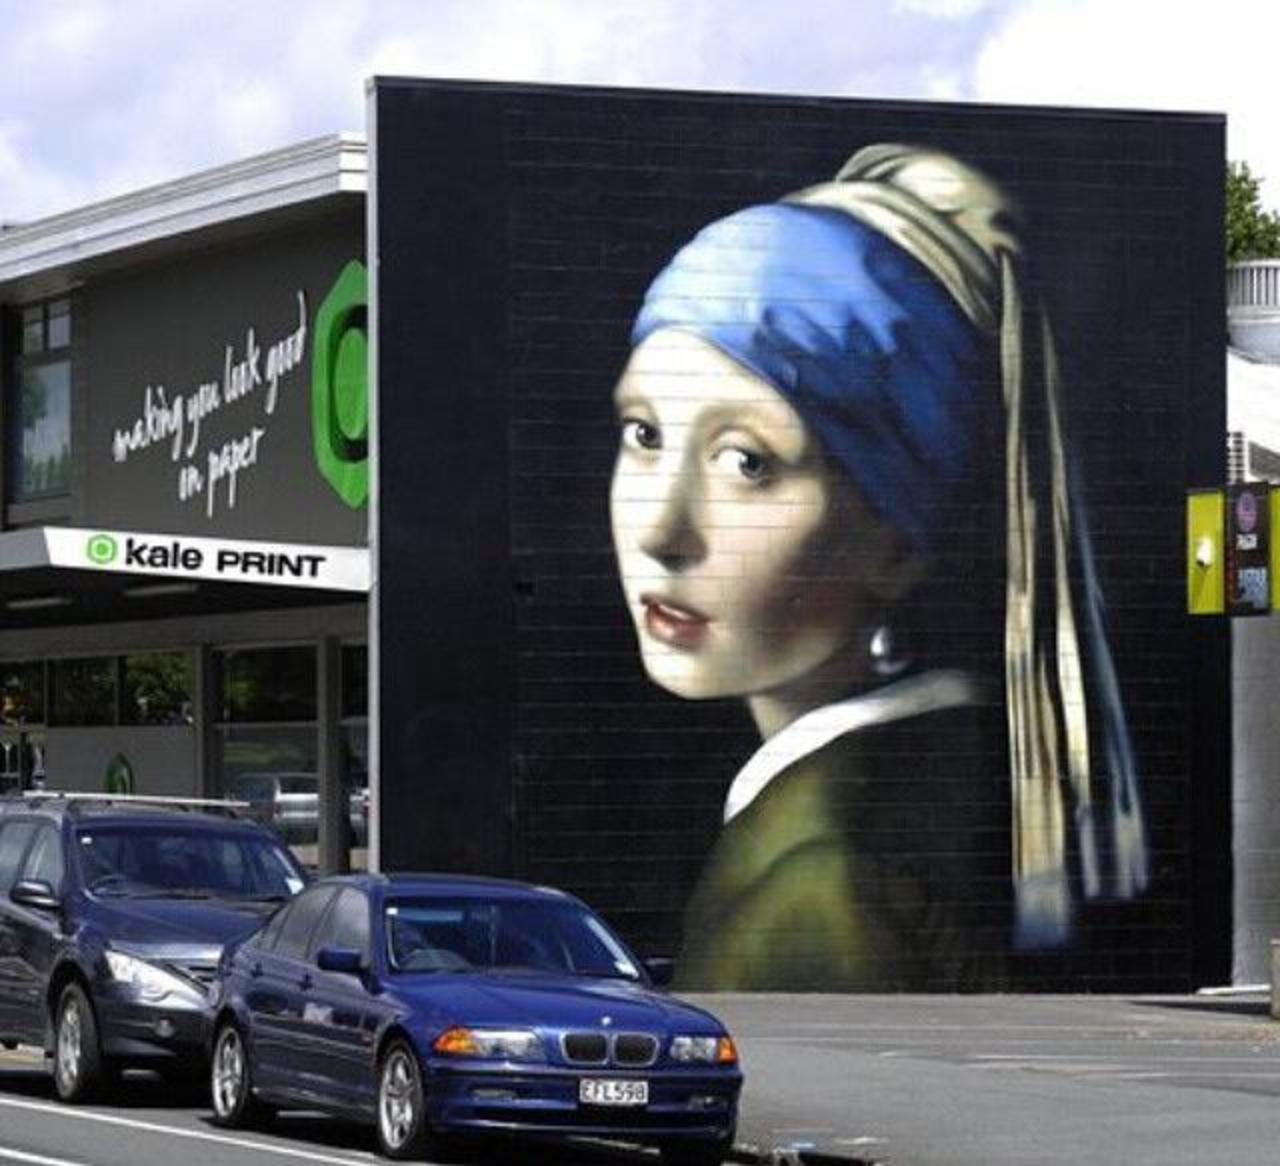 The Girl with the Pearl Earring Street Art by Owen Dippie in New Zealand 

#art #arte #graffiti #streetart http://t.co/6I7K9rQZCf